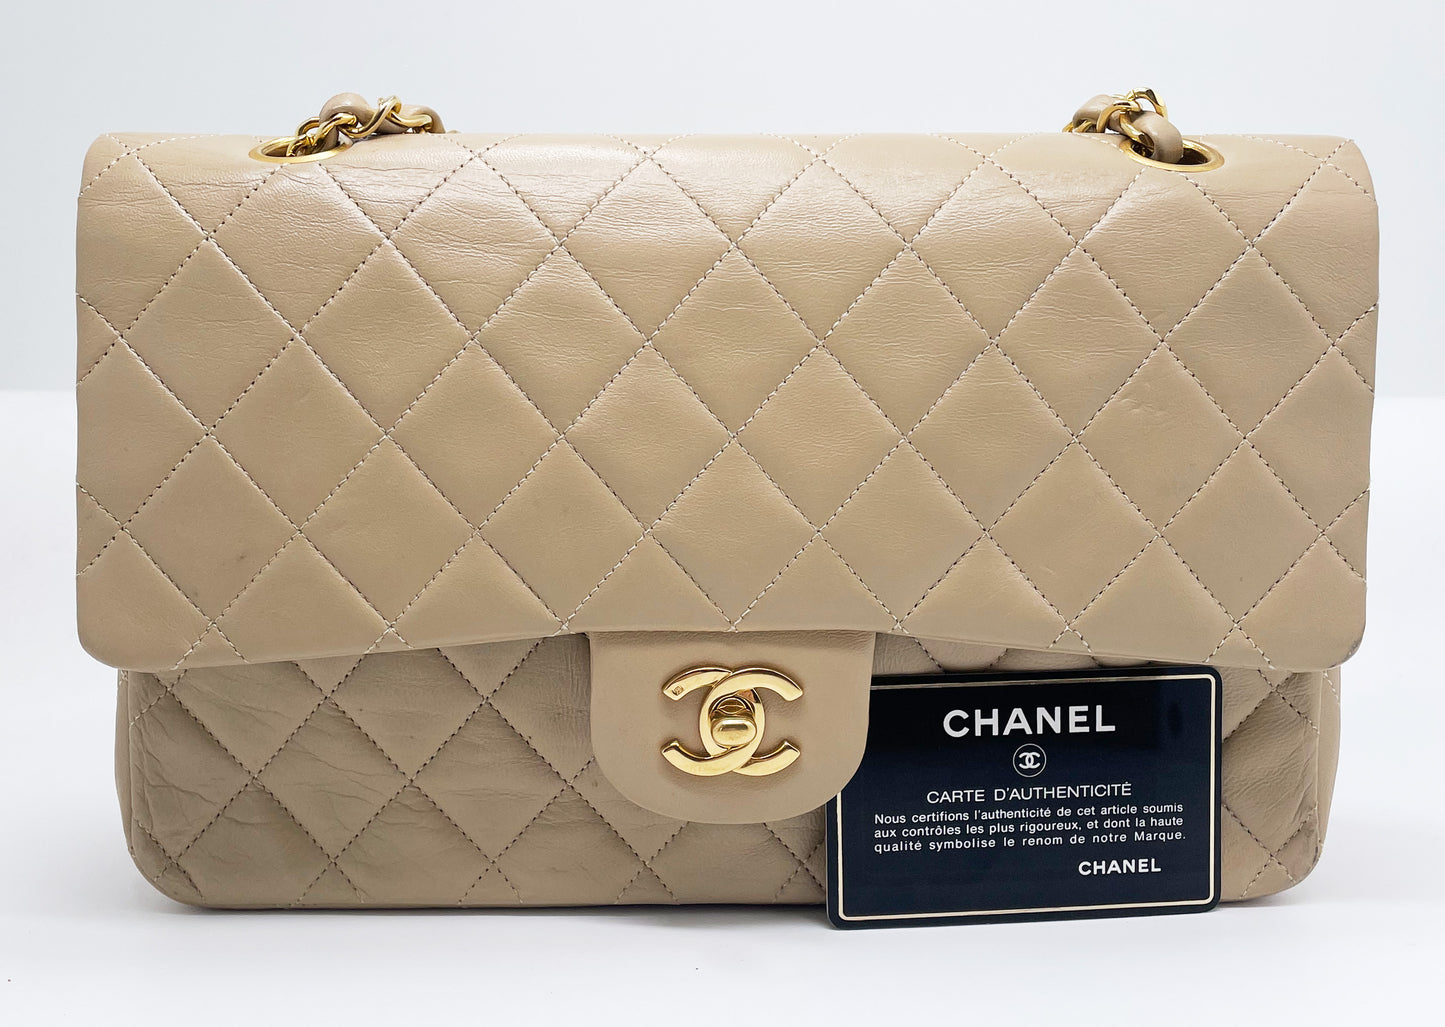 Sac Chanel bandoulière Timeless médium en cuir beige